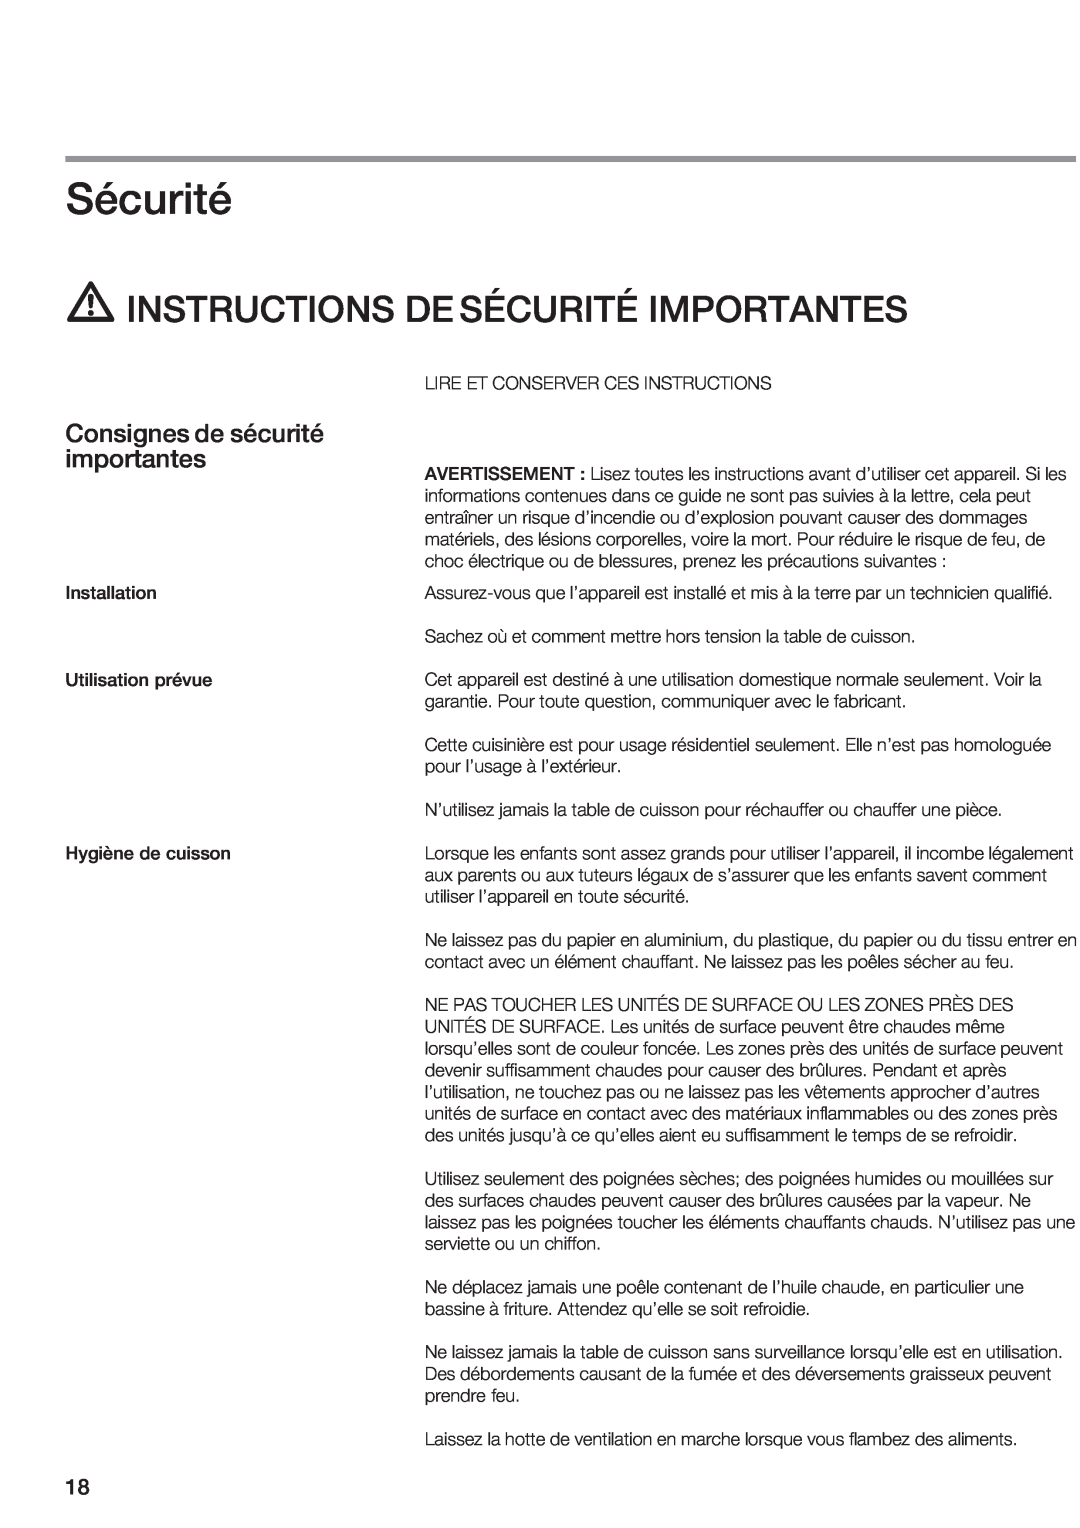 Bosch Appliances NEM 95 manual Instructionsde Sécuritéimportantes, Installation Utilisation prévue, Hygiène de cuisson 